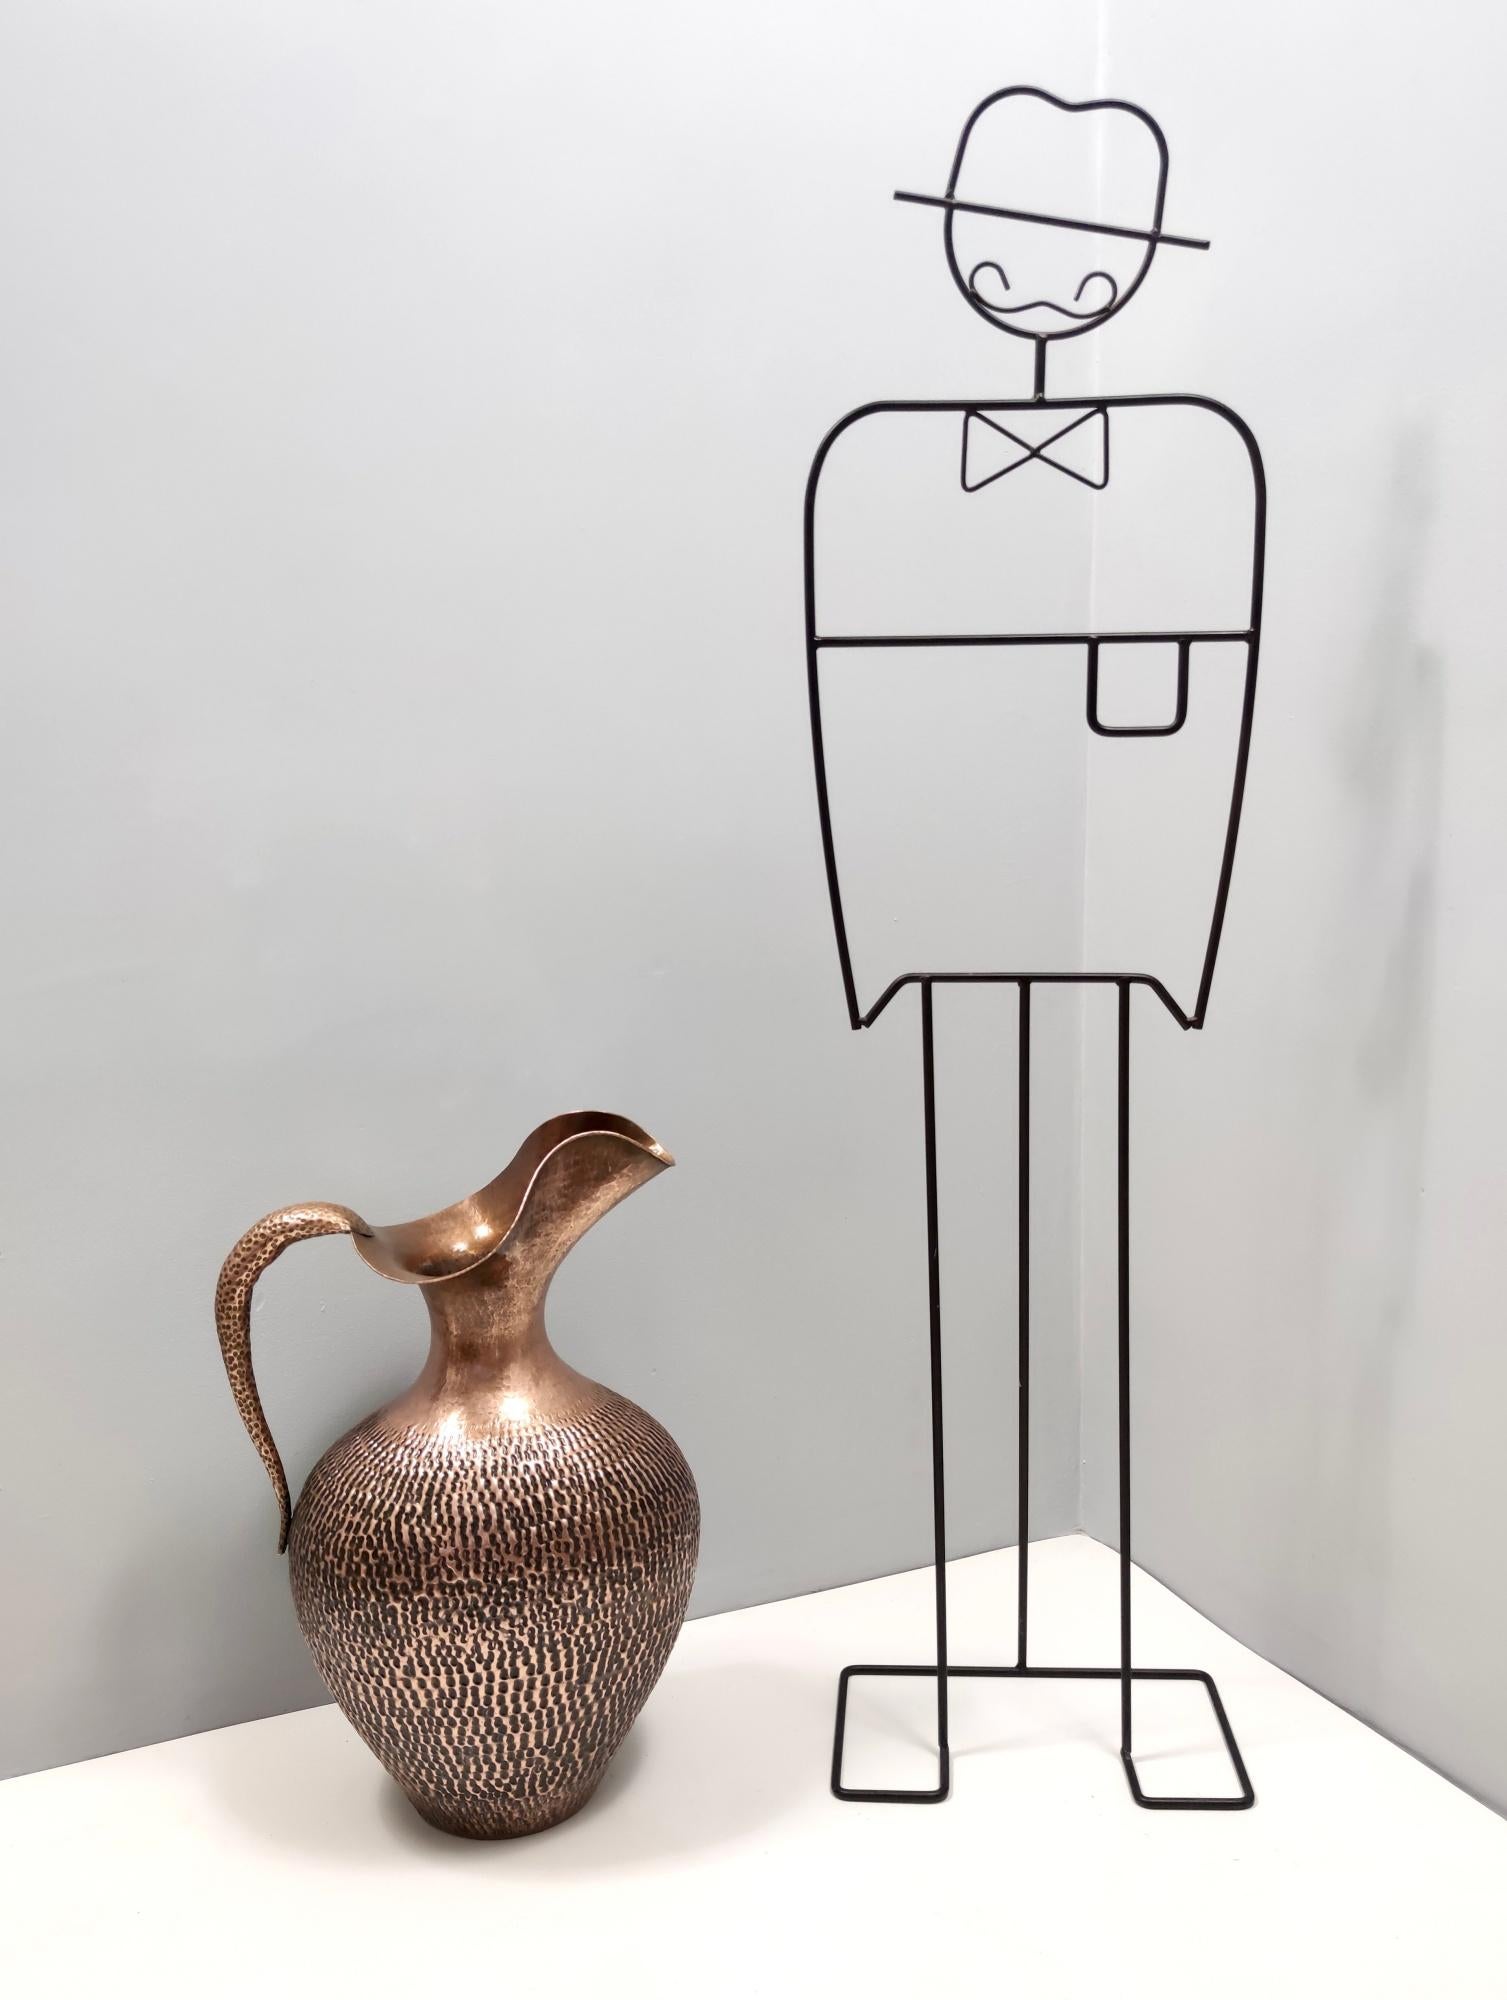 Hergestellt in Italien, 1950er Jahre.
Diese Krugvase, die auch als Schirmständer verwendet werden kann, ist aus geprägtem Kupfer gefertigt. 
Sein minimalistisches und klassisches, aber dennoch modernes Design verkörpert perfekt den Zeitgeist. 
Da es